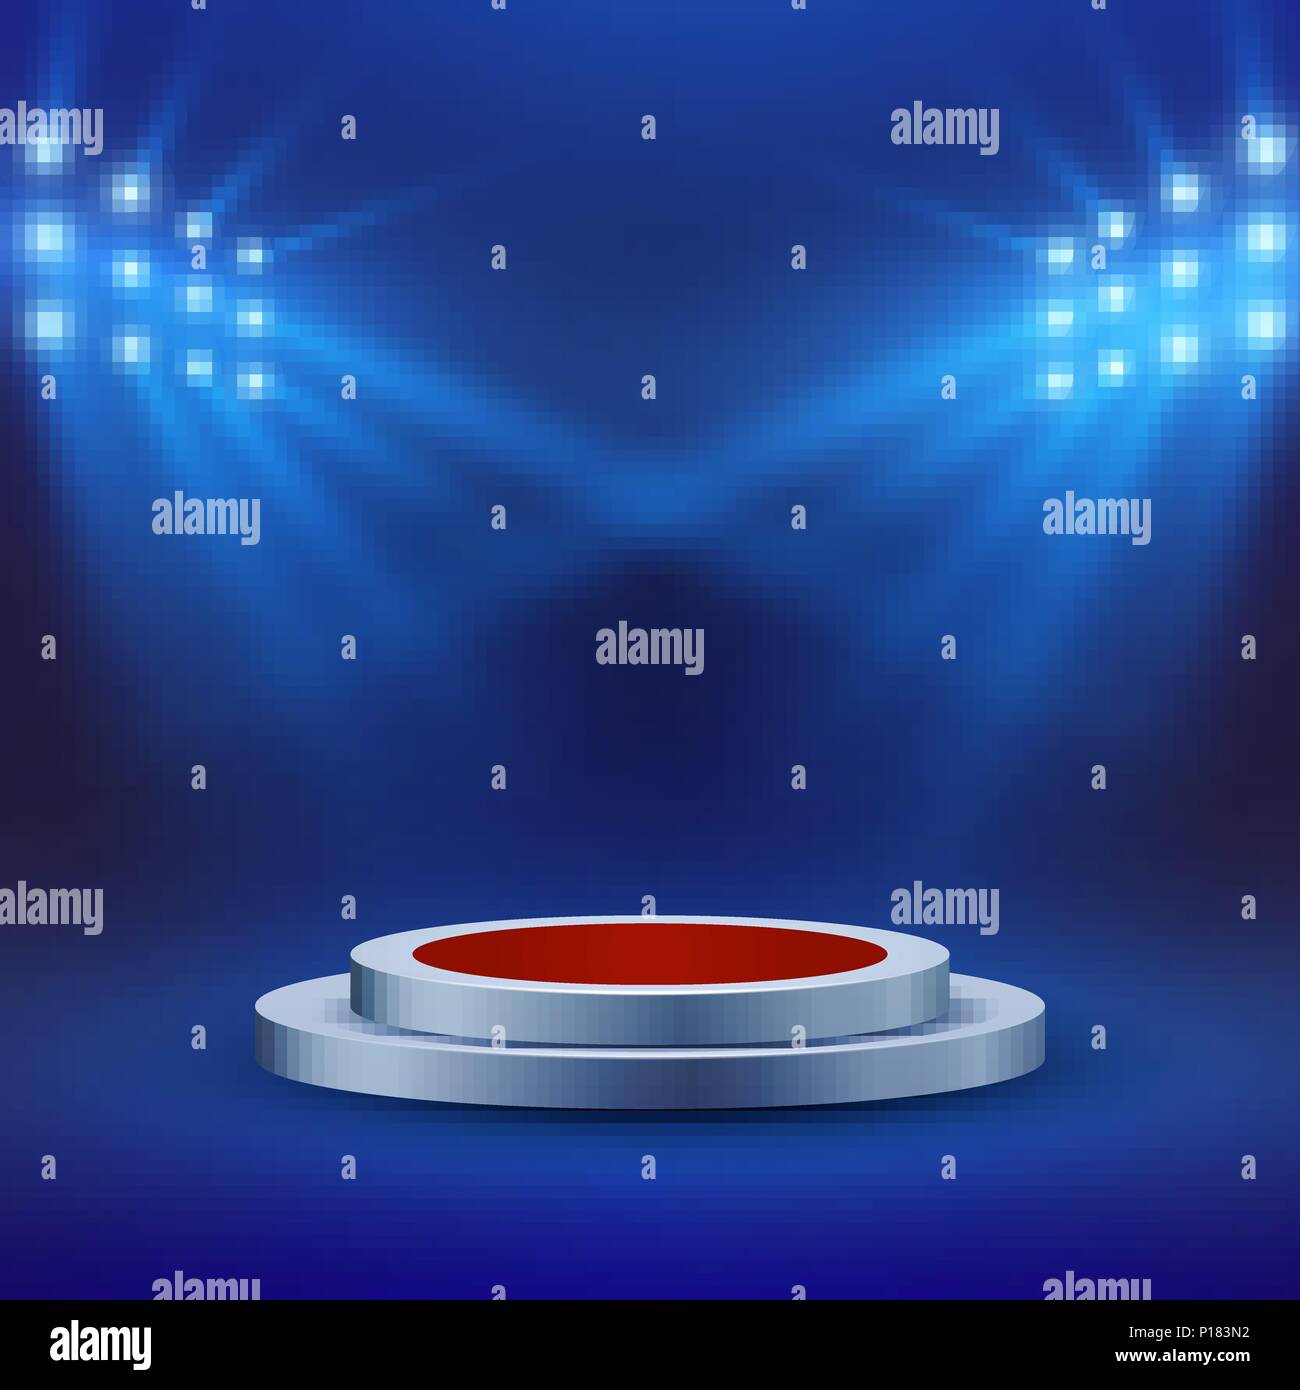 Stufe mit rotem Teppich und Spotlight auf blauem Hintergrund. Konzert Arena oder Szene. Leere Podium. Vector Illustration Stock Vektor